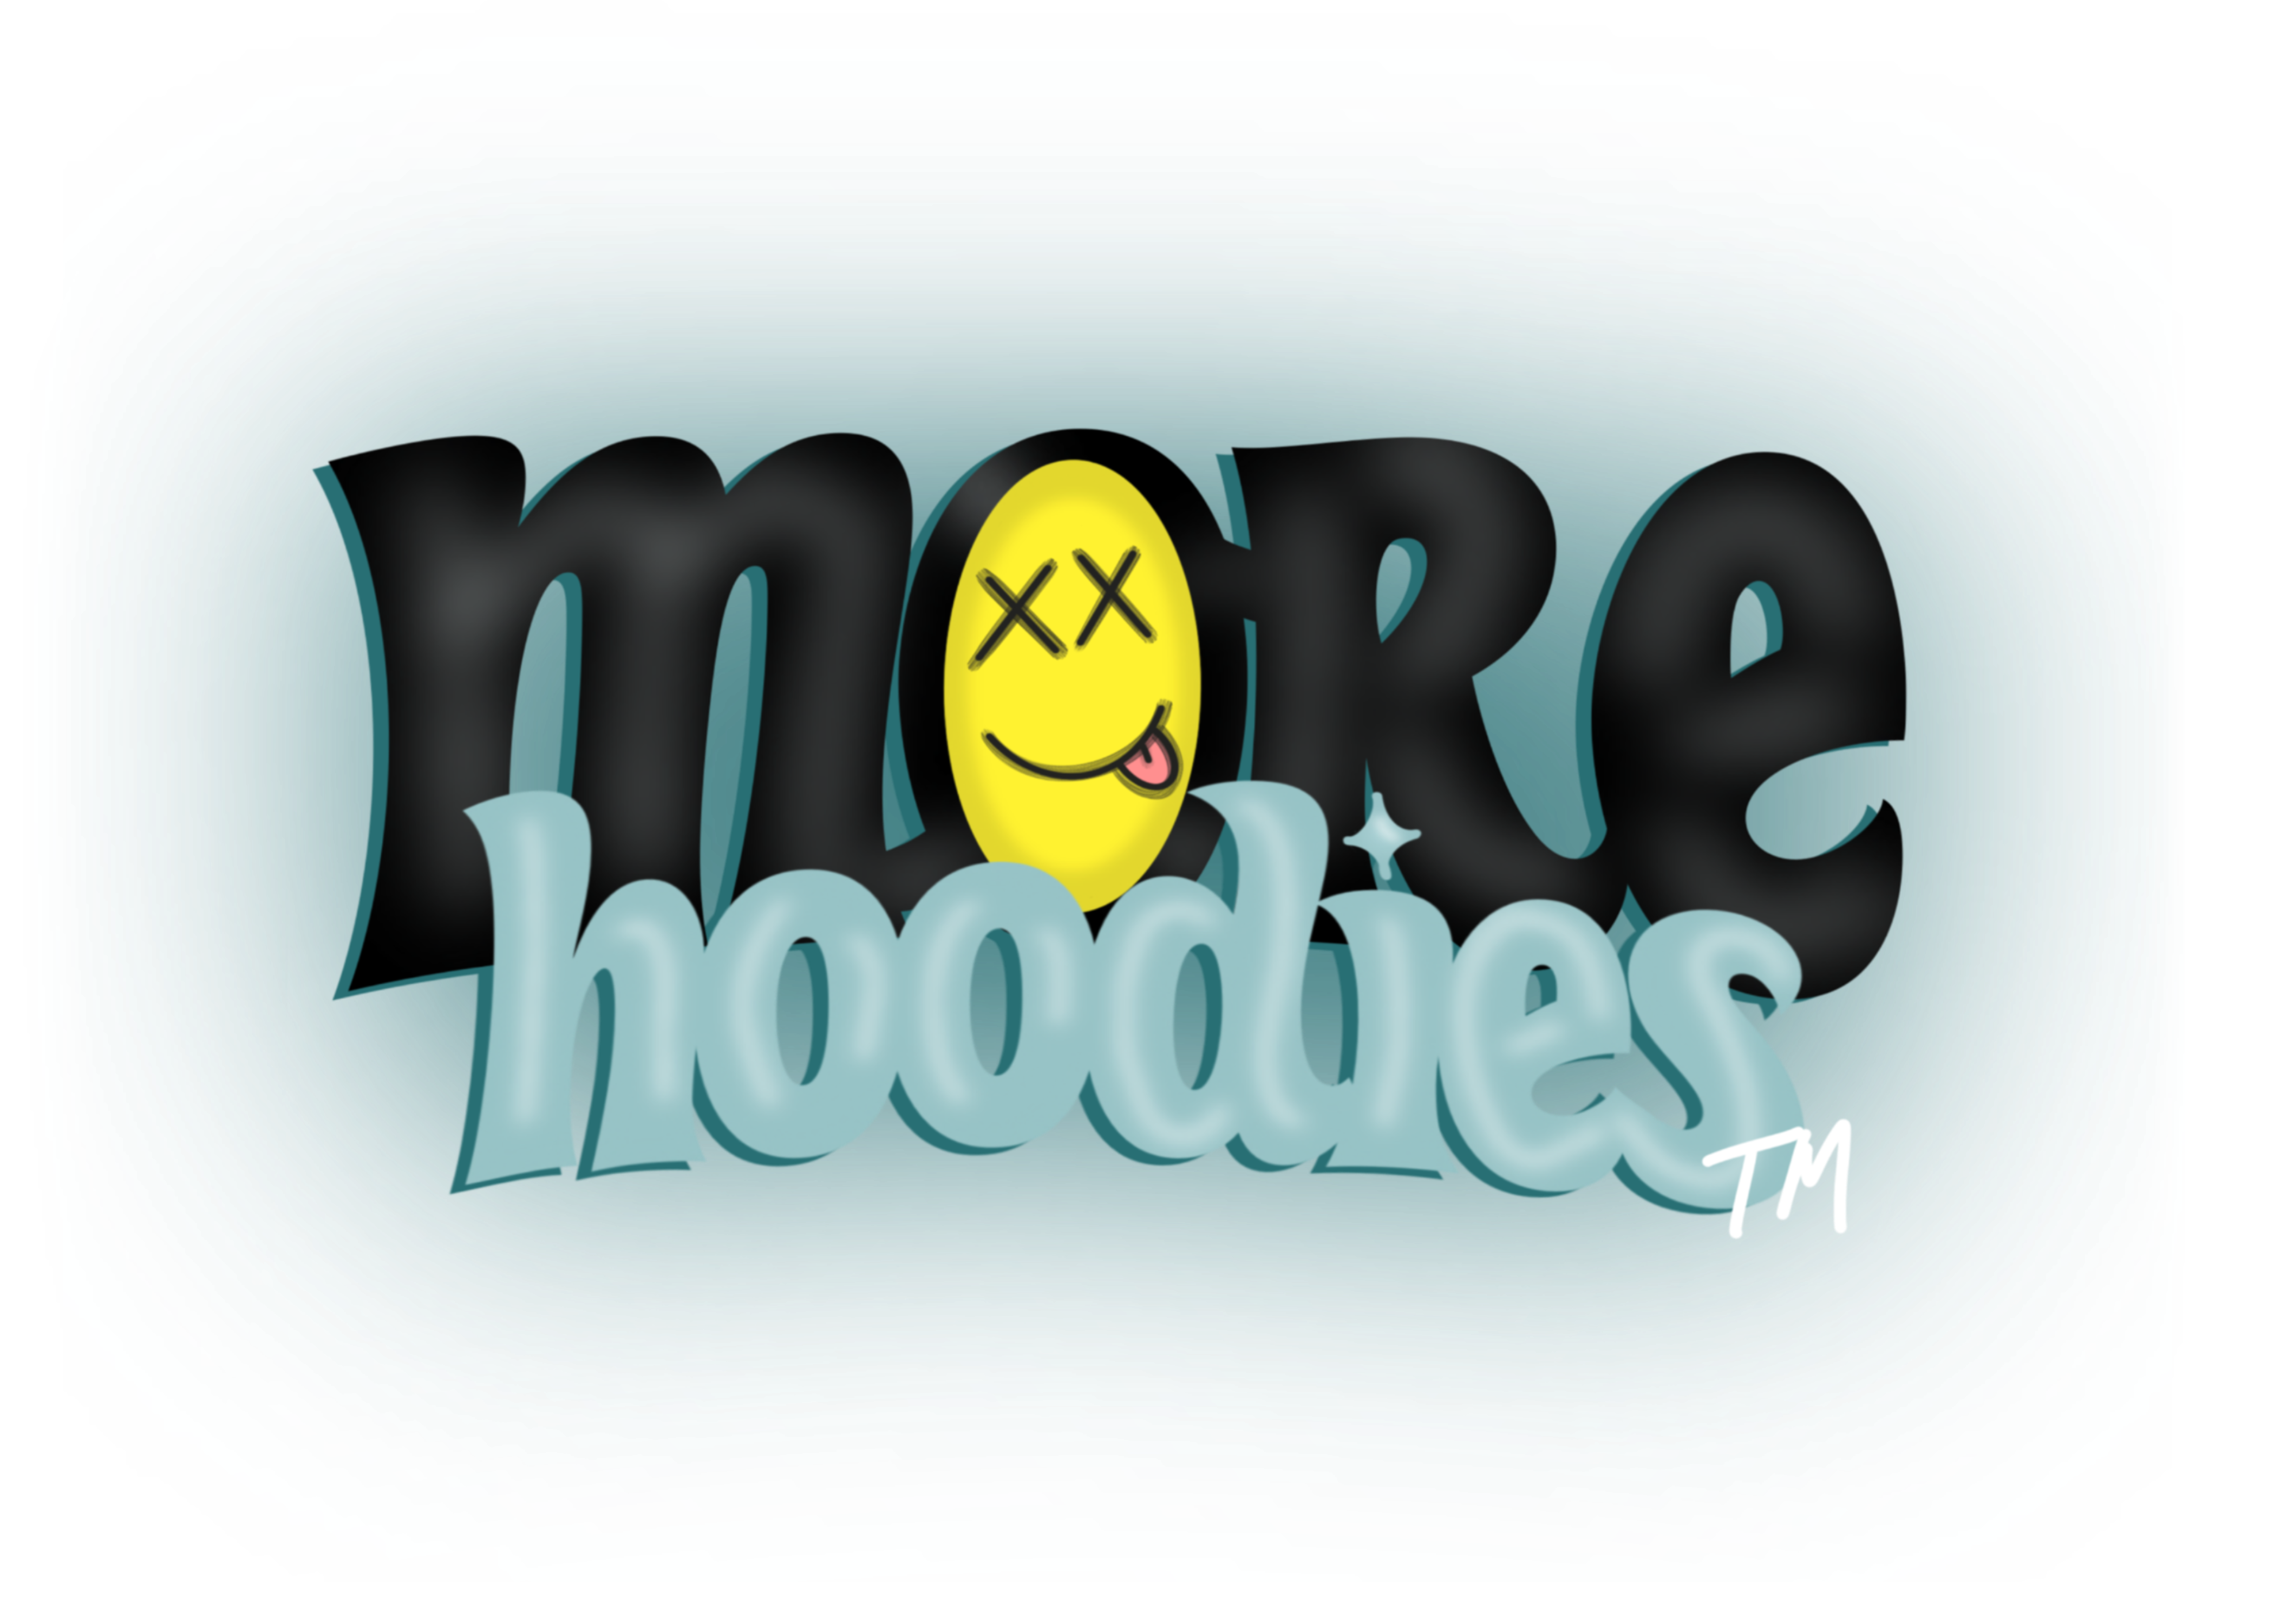 MoreHoodies™